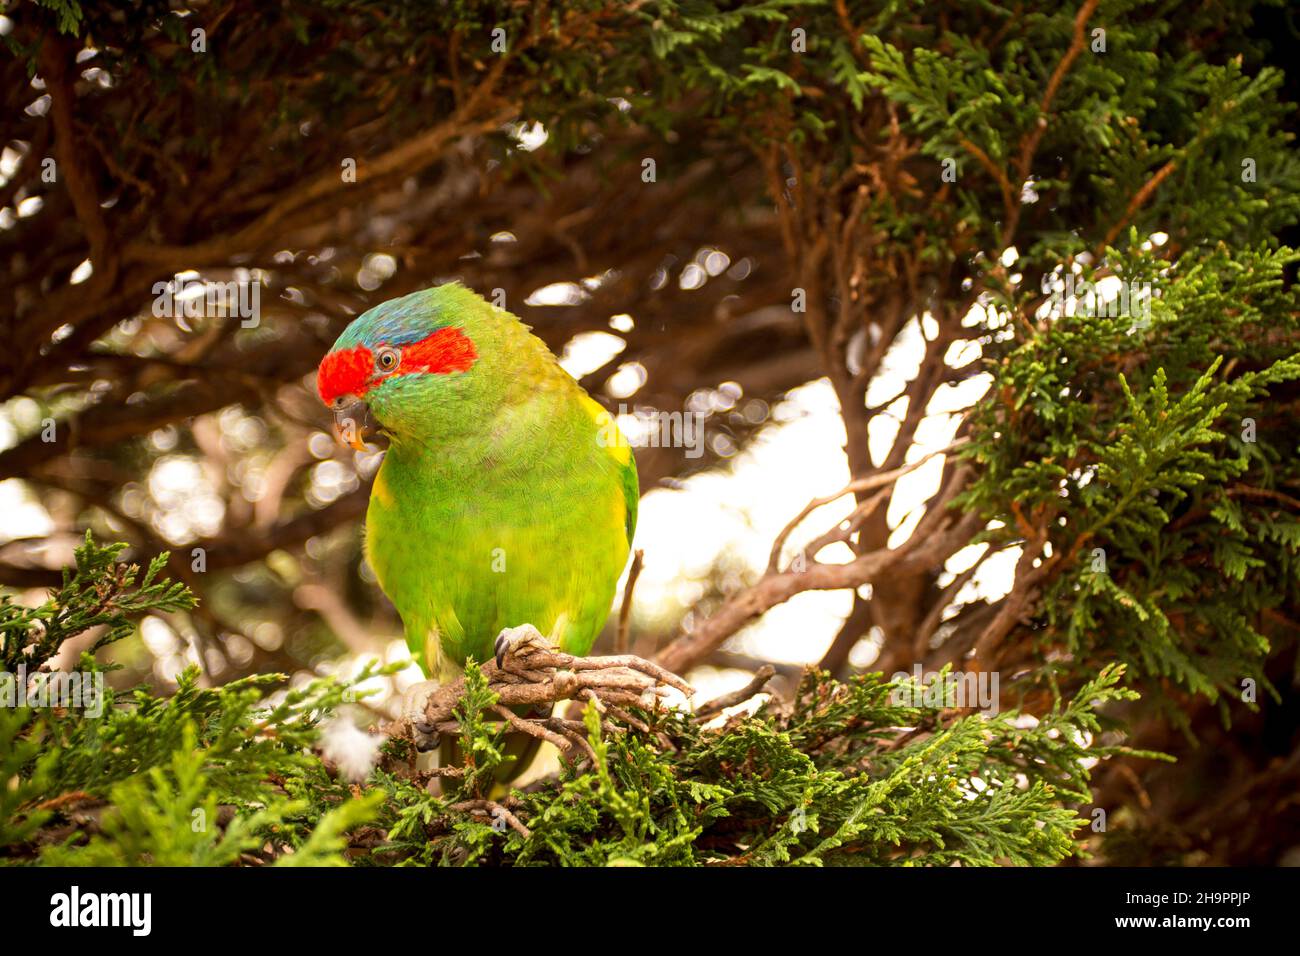 The musk lorikeet (Glossopsitta concinna). Australian parrot in the wild Stock Photo